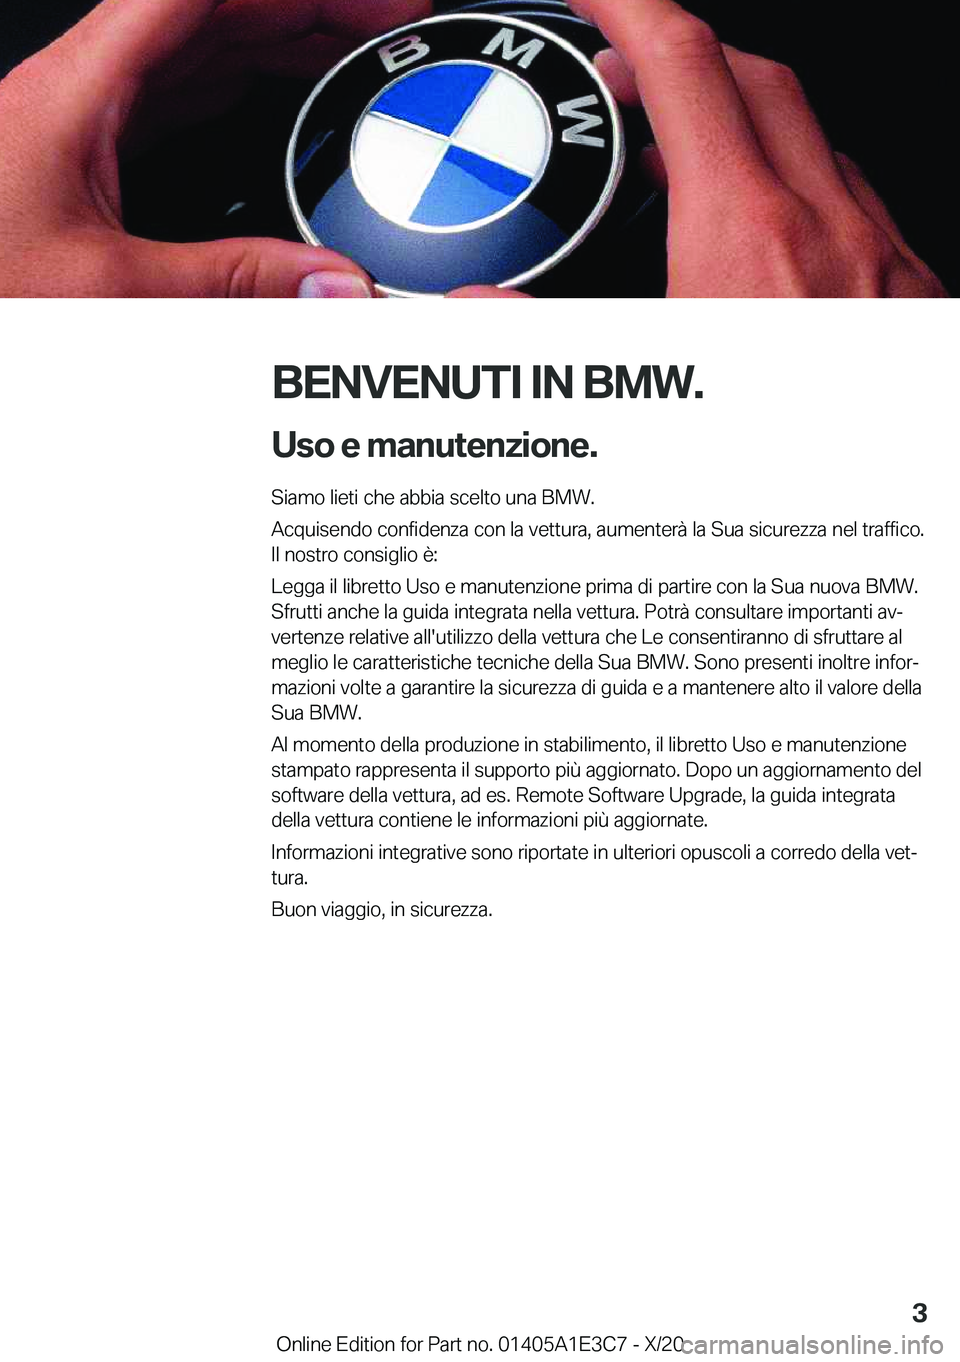 BMW M4 2021  Libretti Di Uso E manutenzione (in Italian) �B�E�N�V�E�N�U�T�I��I�N��B�M�W�.�U�s�o��e��m�a�n�u�t�e�n�z�i�o�n�e�.
�S�i�a�m�o��l�i�e�t�i��c�h�e��a�b�b�i�a��s�c�e�l�t�o��u�n�a��B�M�W�.
�A�c�q�u�i�s�e�n�d�o��c�o�n�f�i�d�e�n�z�a��c�o�n�